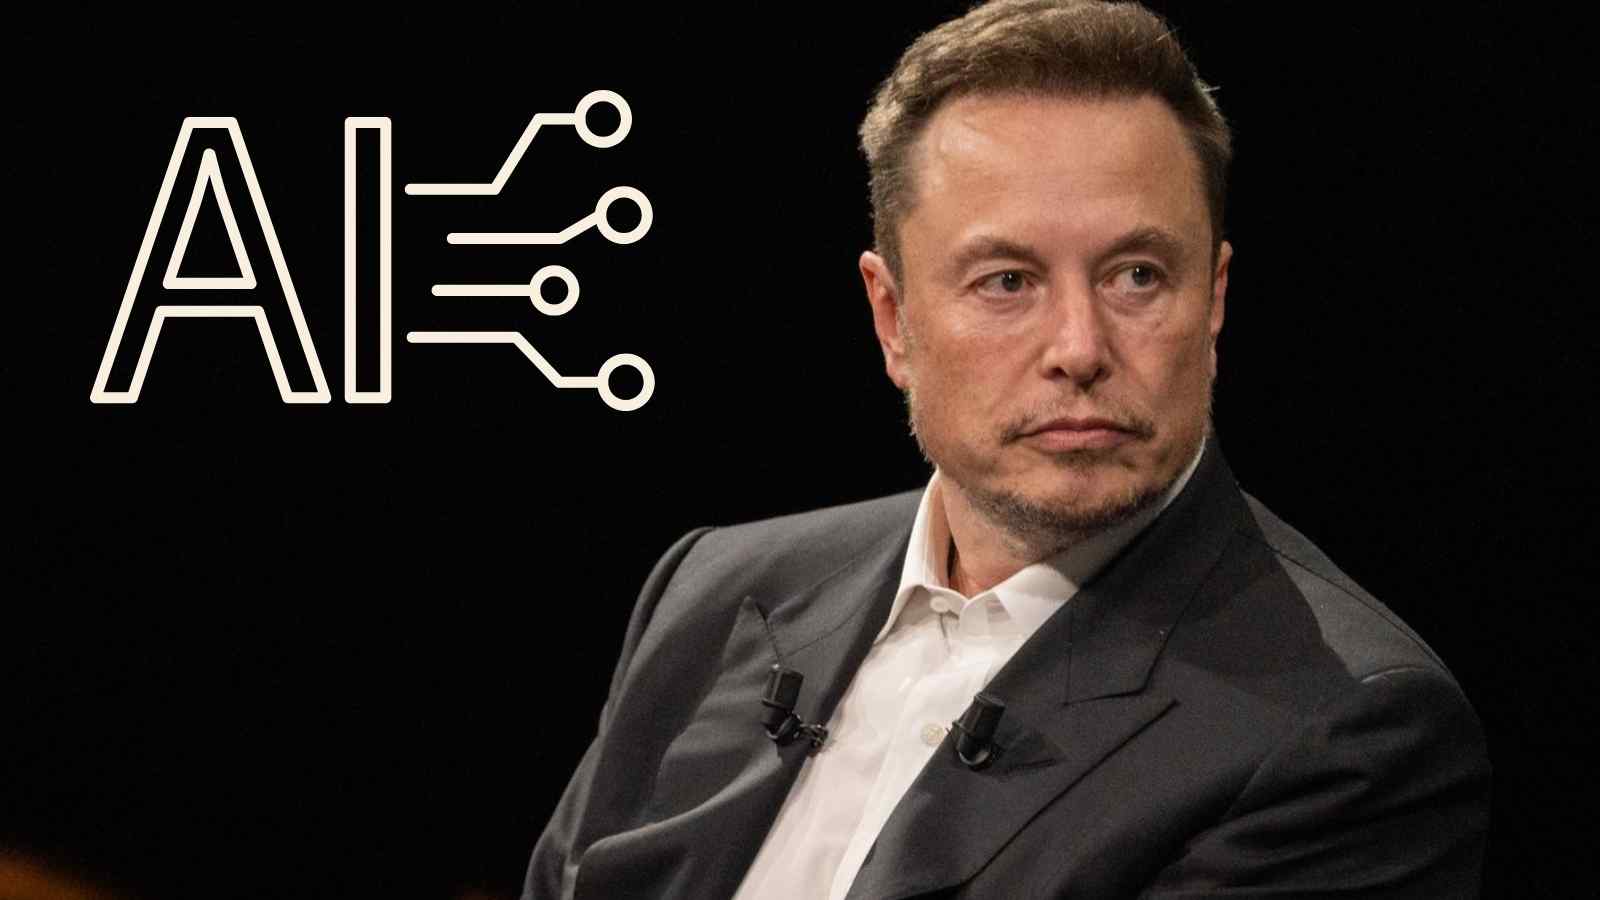 Musk continua la sua corsa per l'IA con la costruzione di un supercomputer